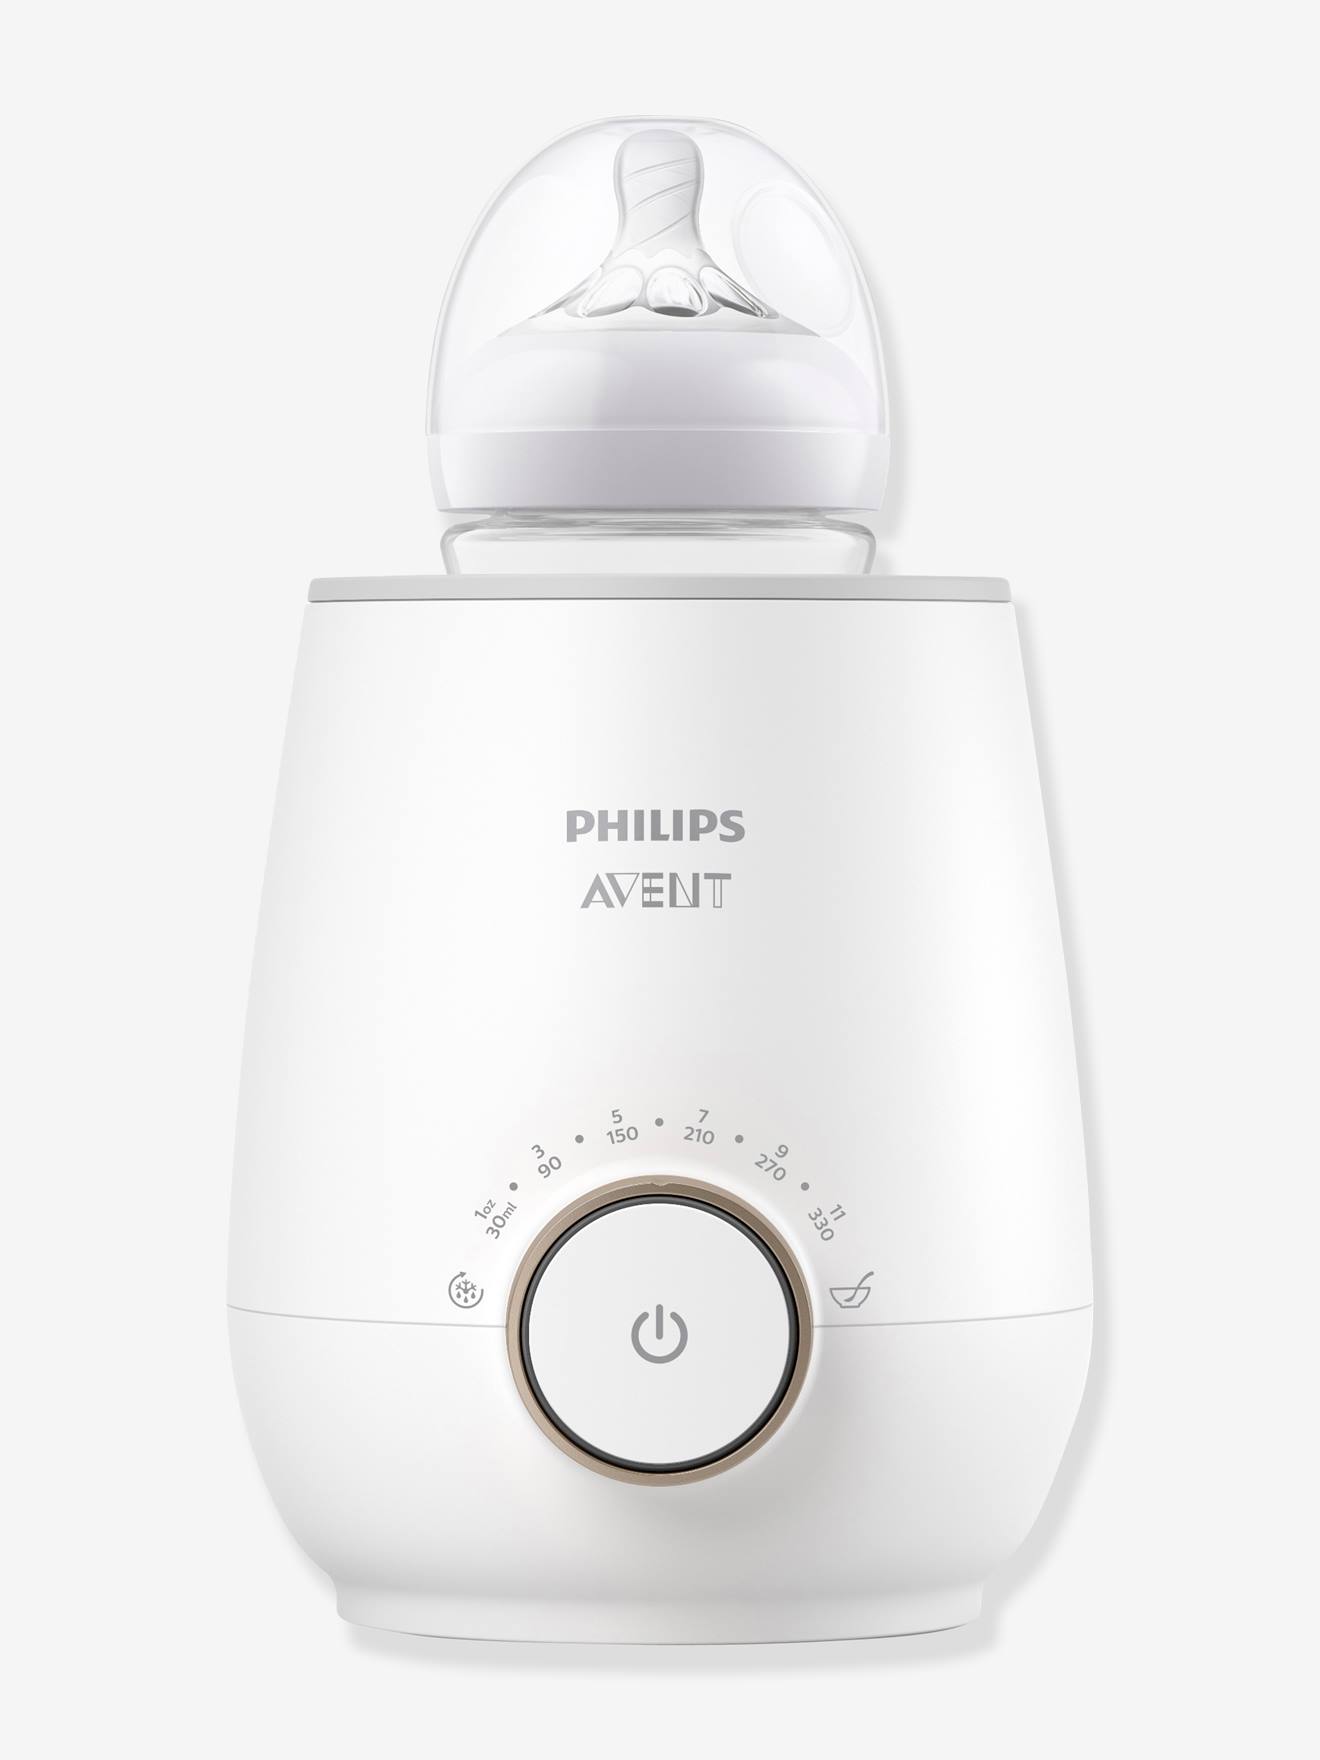 Aquecedor de biberões elétrico, SCF358 da Philips AVENT branco claro liso